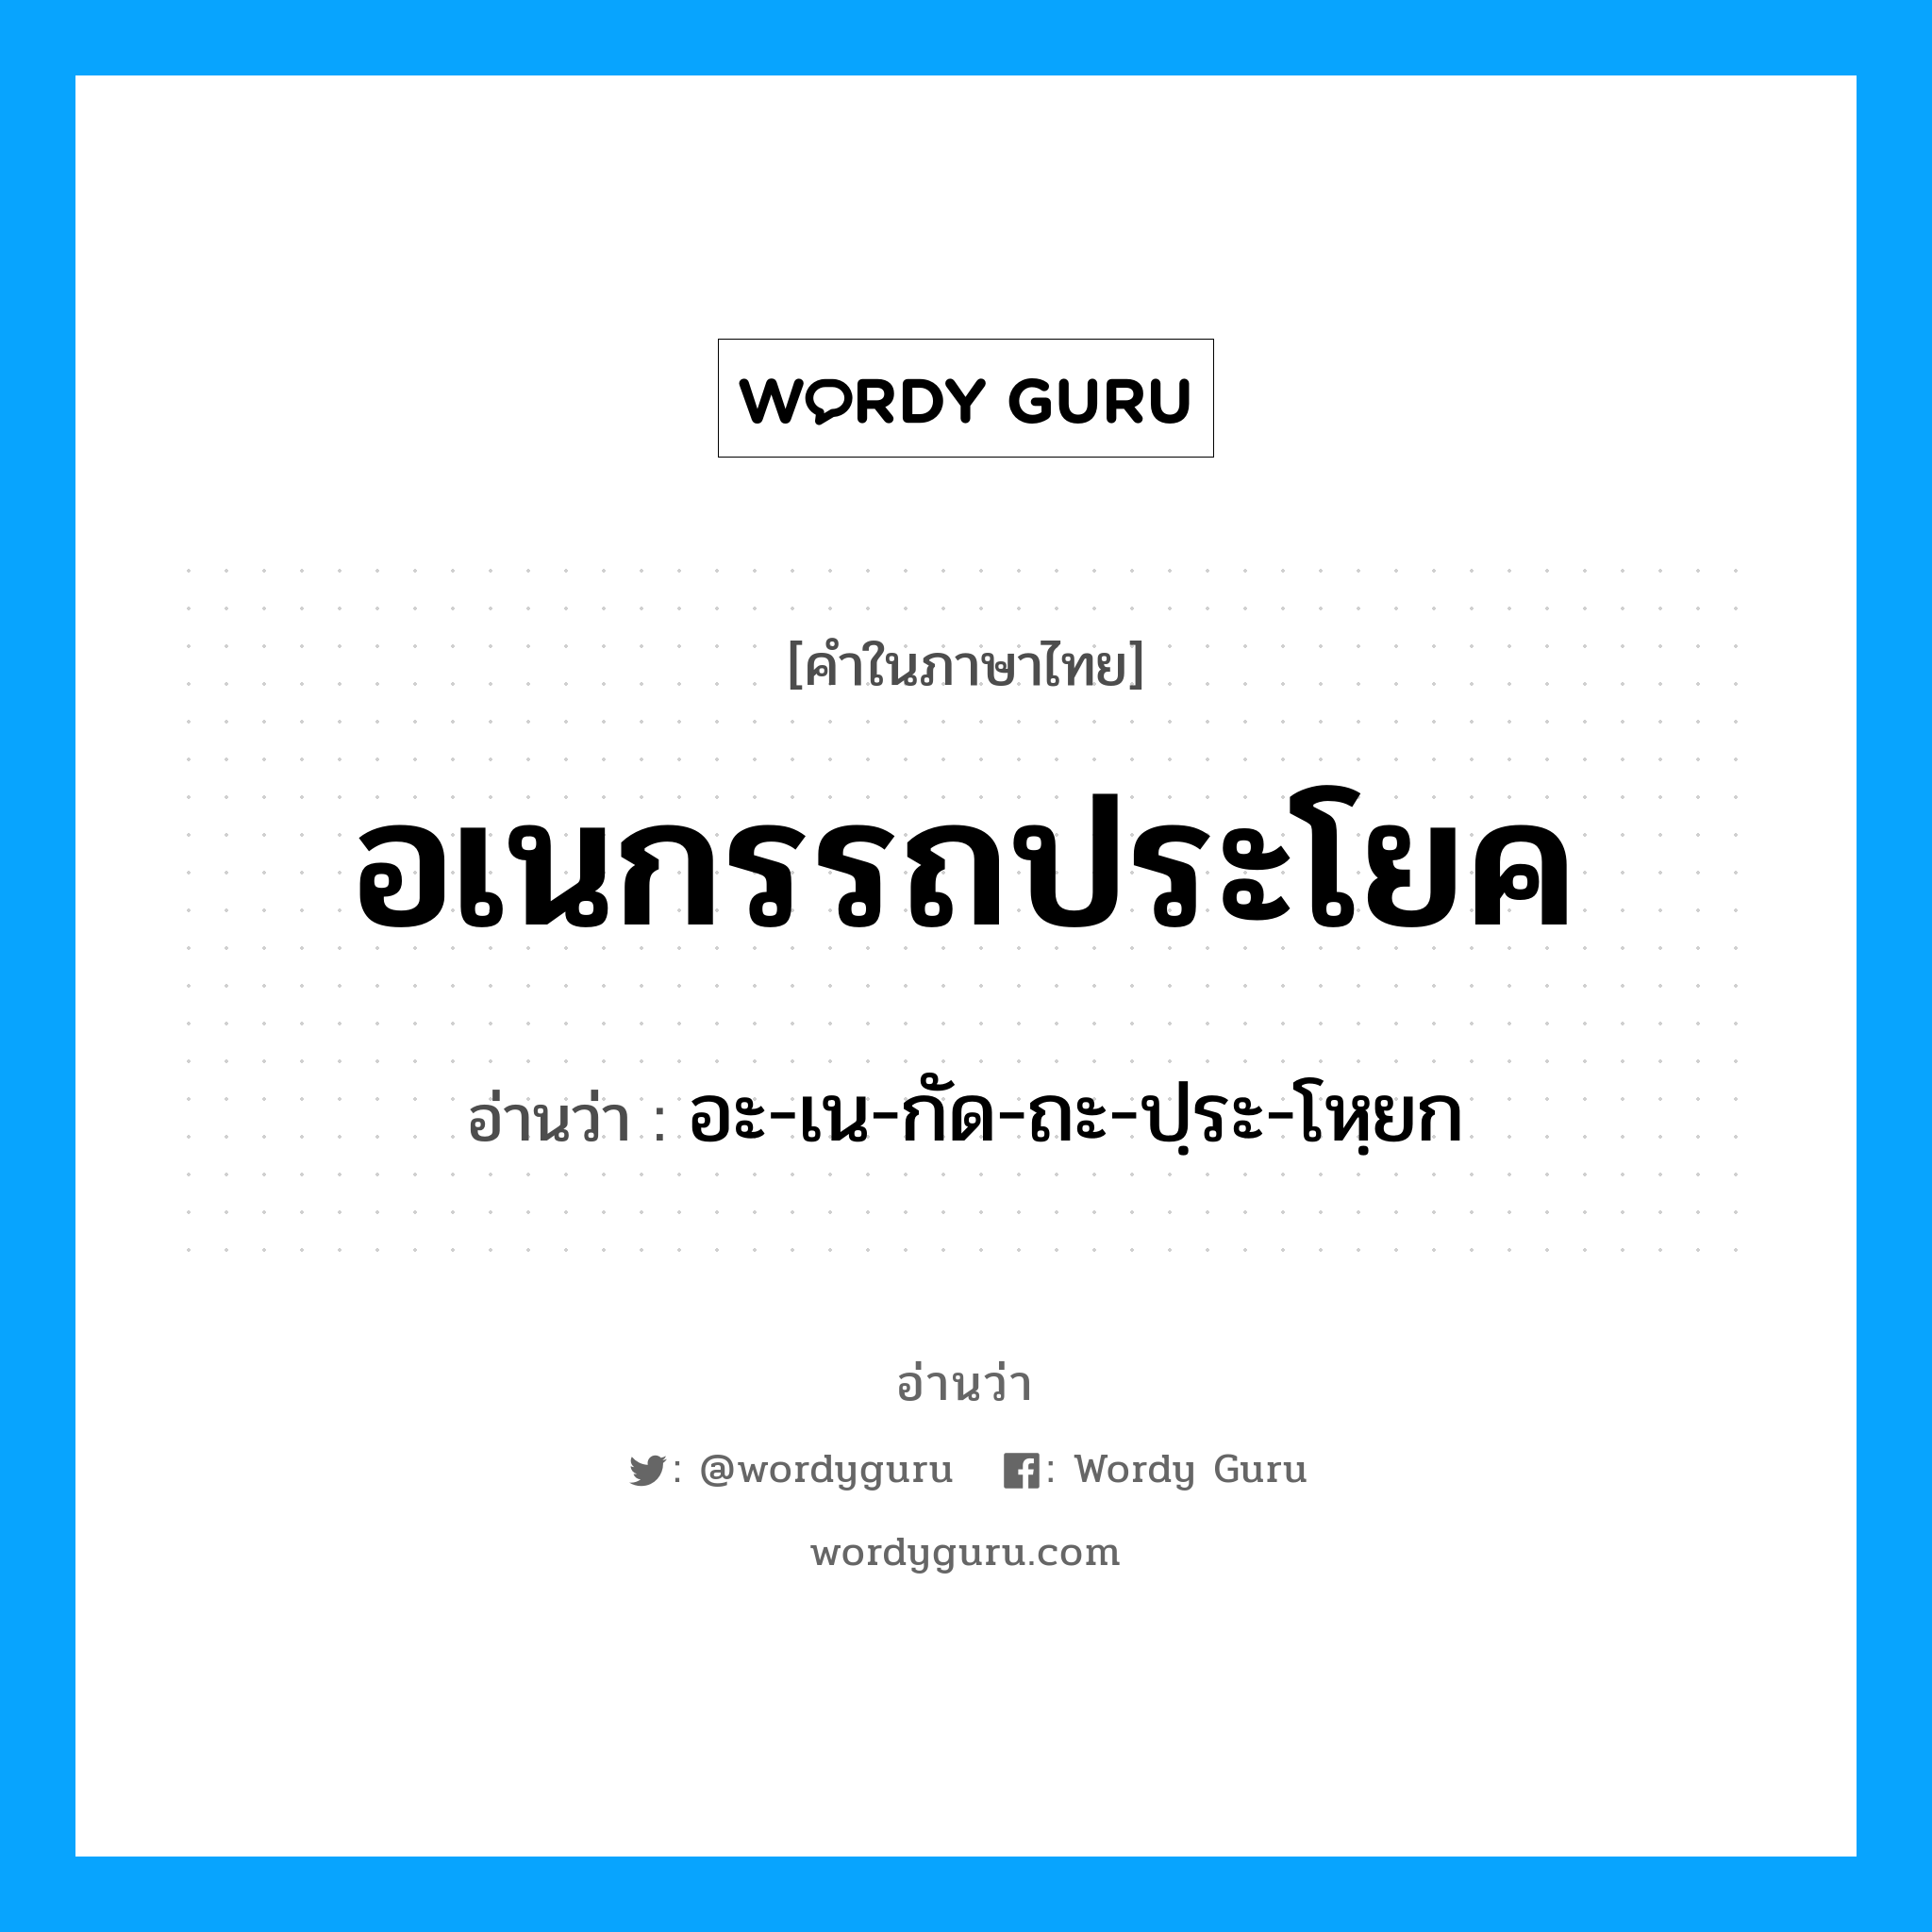 อะ-เน-กัด-ถะ-ปฺระ-โหฺยก เป็นคำอ่านของคำไหน?, คำในภาษาไทย อะ-เน-กัด-ถะ-ปฺระ-โหฺยก อ่านว่า อเนกรรถประโยค